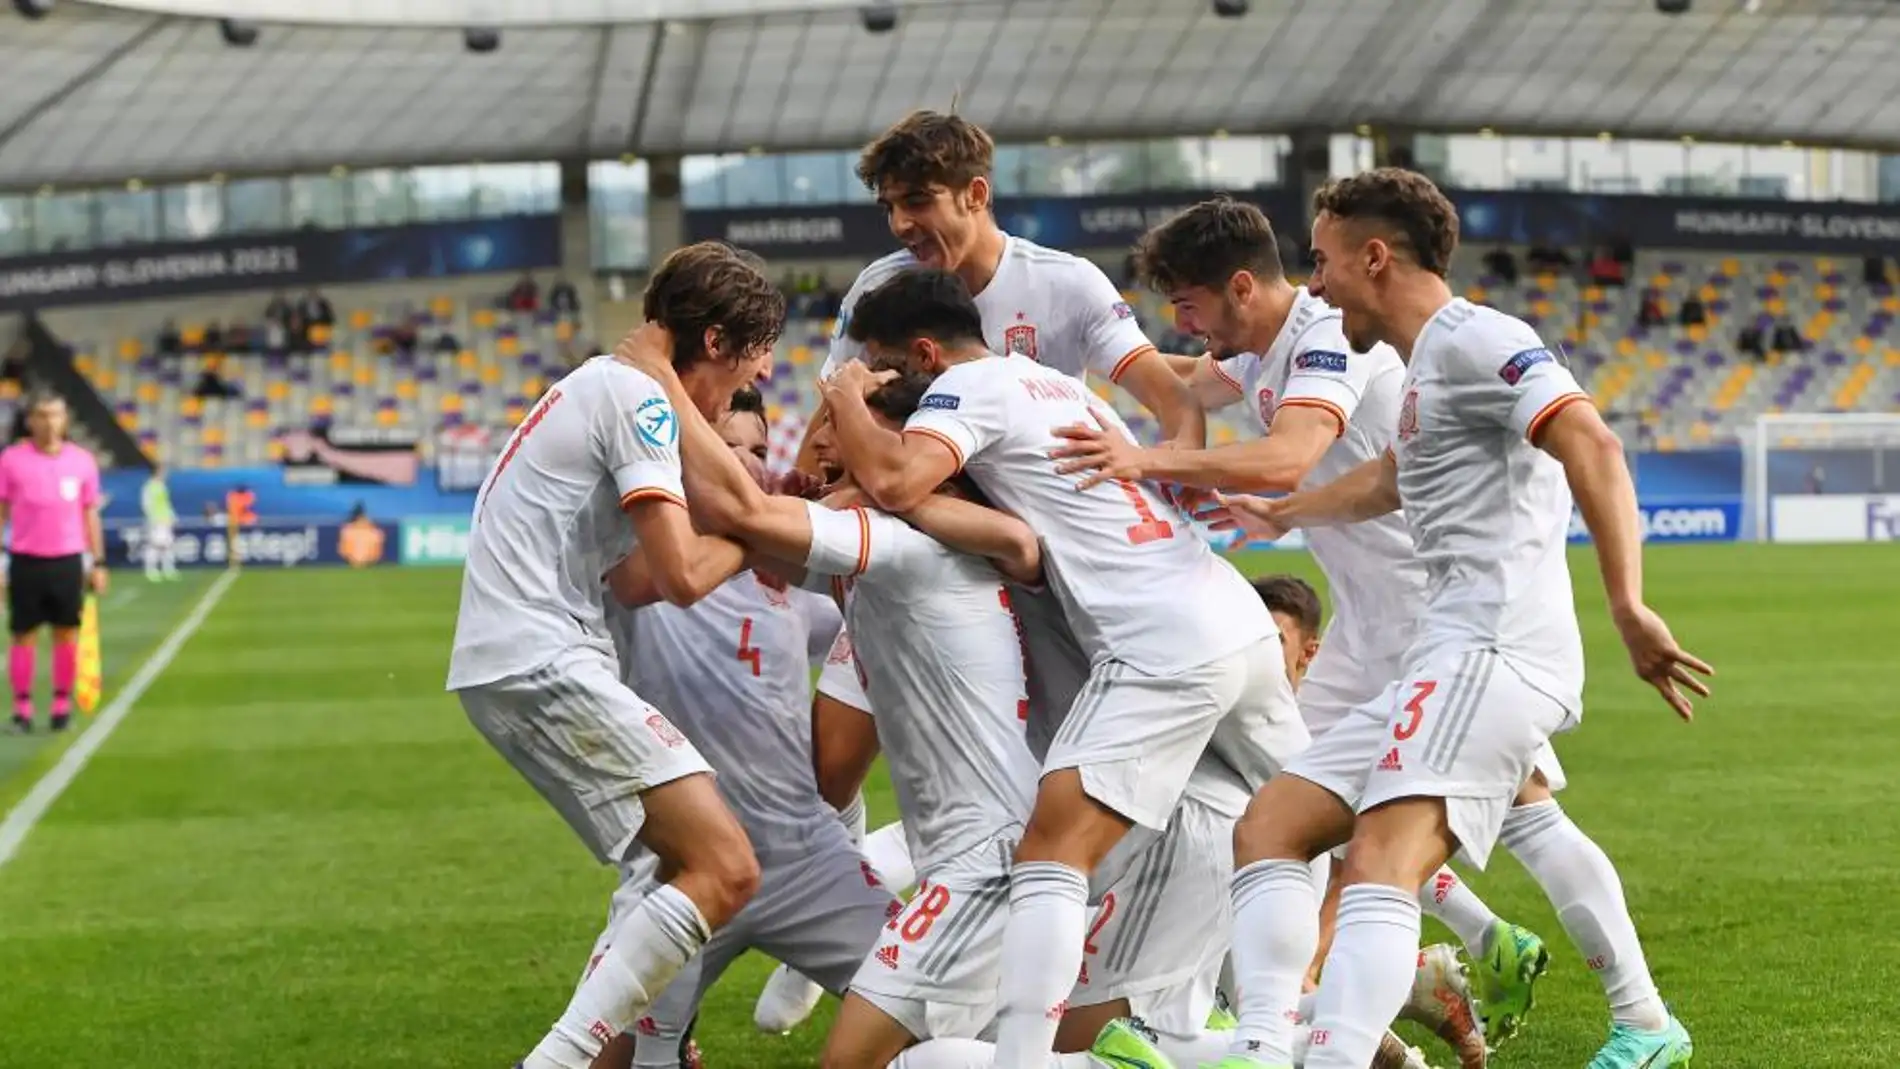 La 'Rojita' jugará contra suiza en Almería el próximo día 24